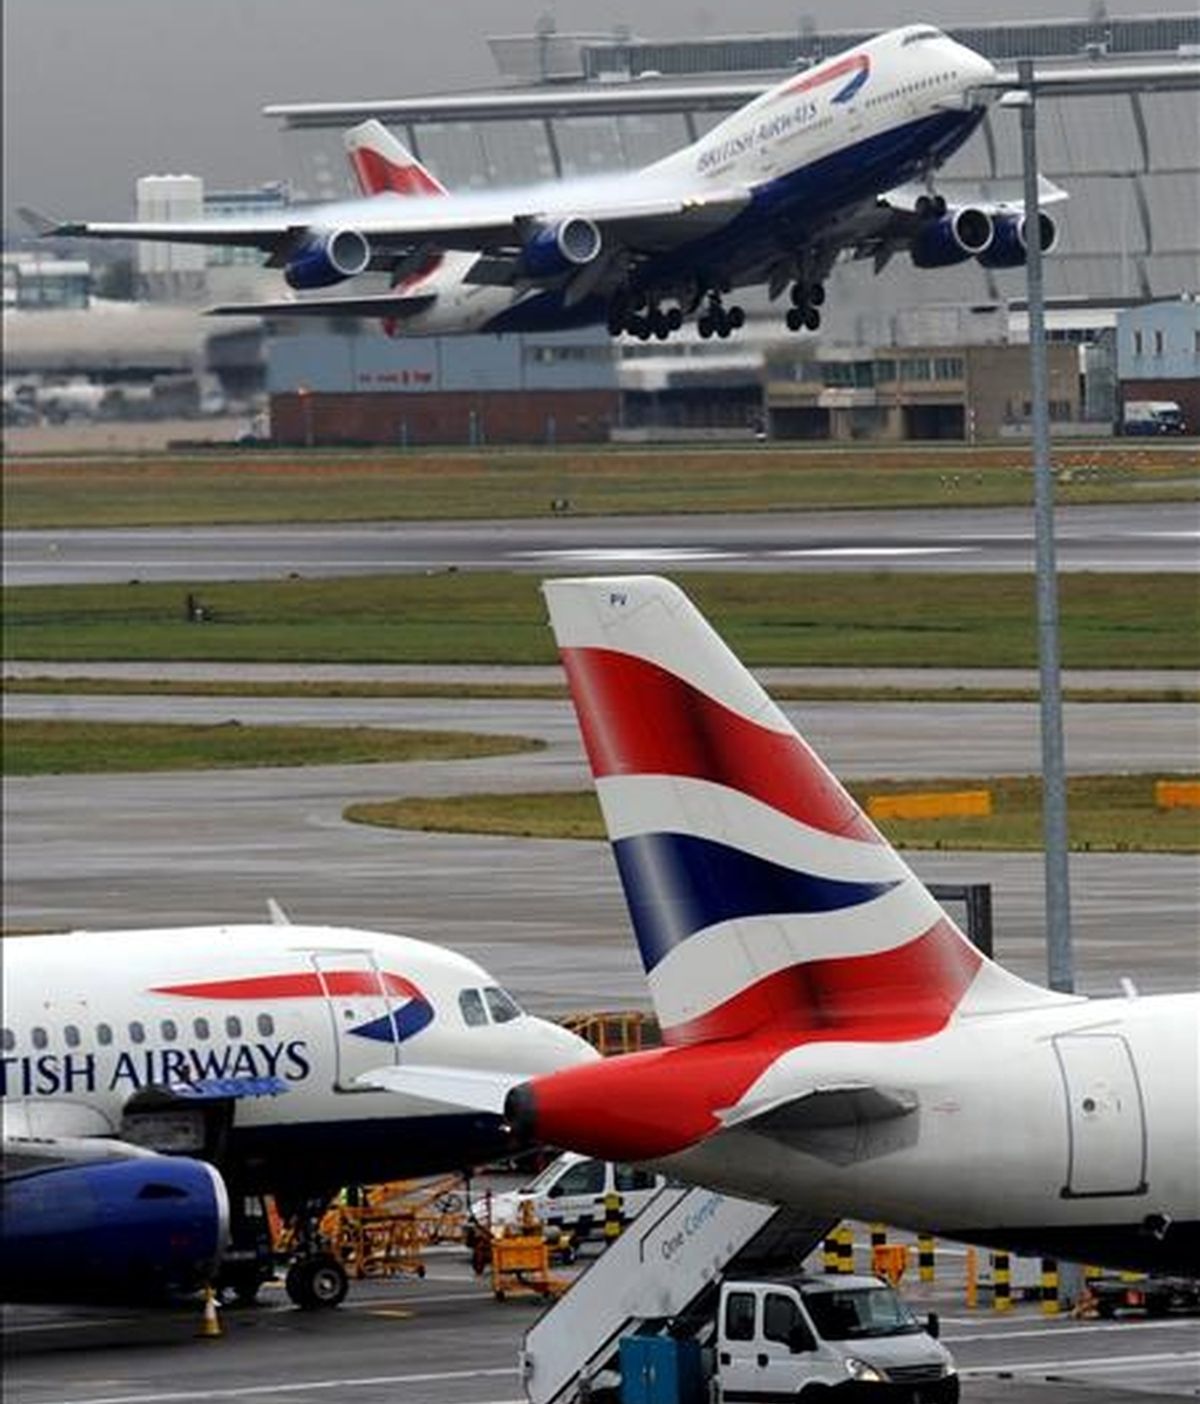 Aviones de British Airways (BA) en el aeropuerto de Heathrow en Londres, Reino Unido. Vídeo: ATLAS